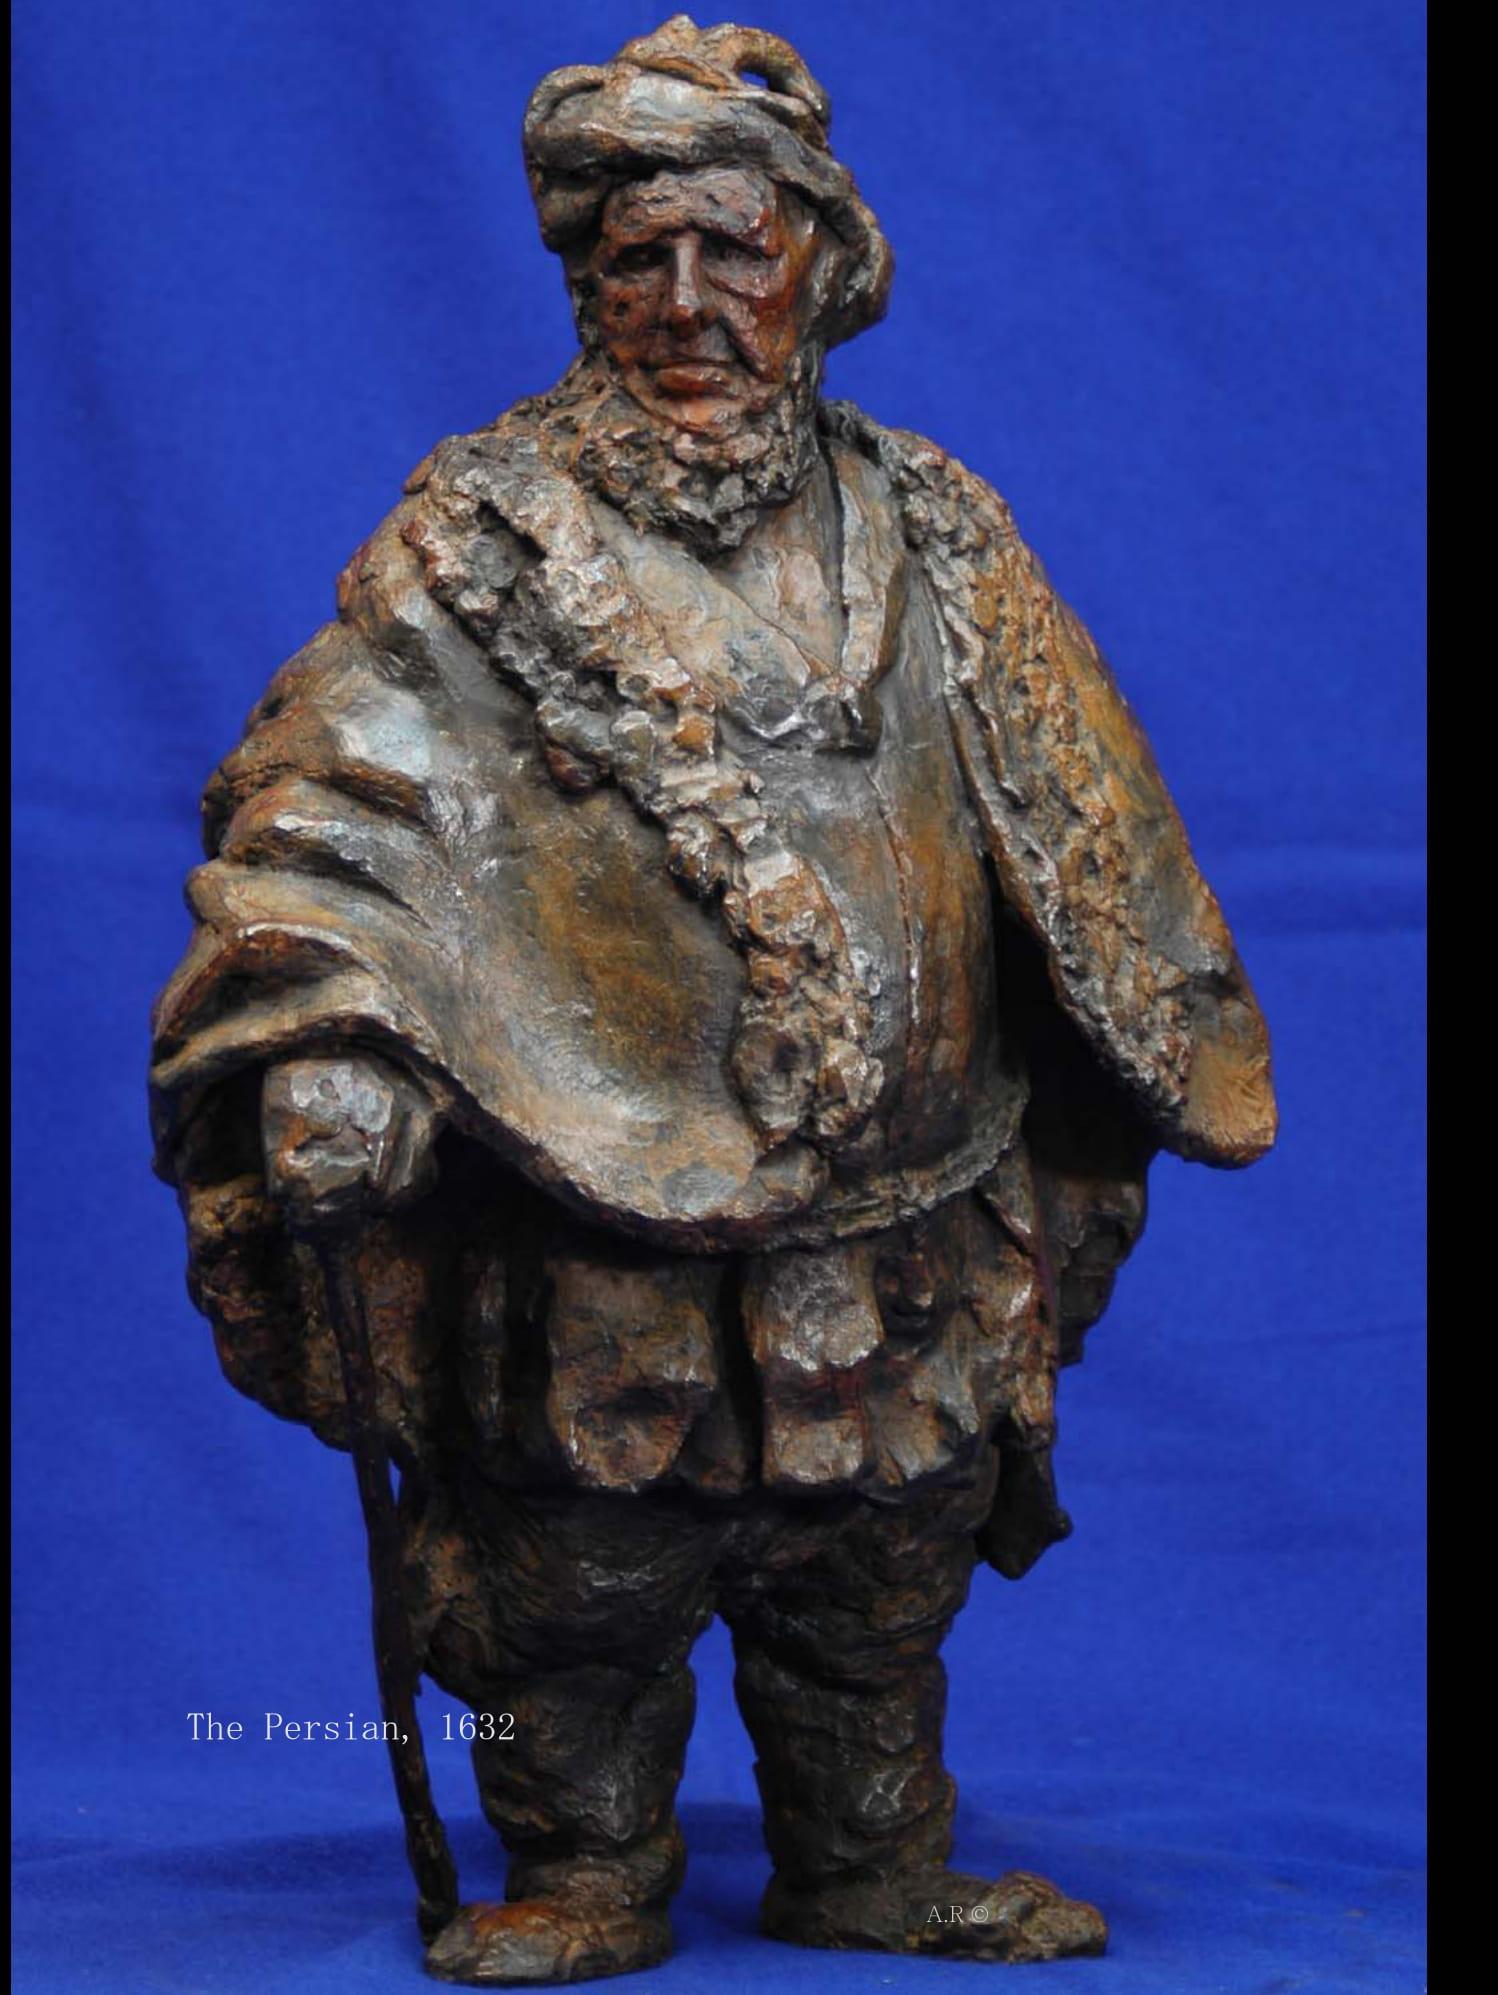 Rembrandt en bronze - "Le Persan".

Sculpture unique gravée à l'eau-forte.

Après la gravure originale de  1632.

"Painting in Bronze" est une série de bronzes, fidèles à l'esprit des gravures originales de Rembrandt.
La série a été accueillie avec